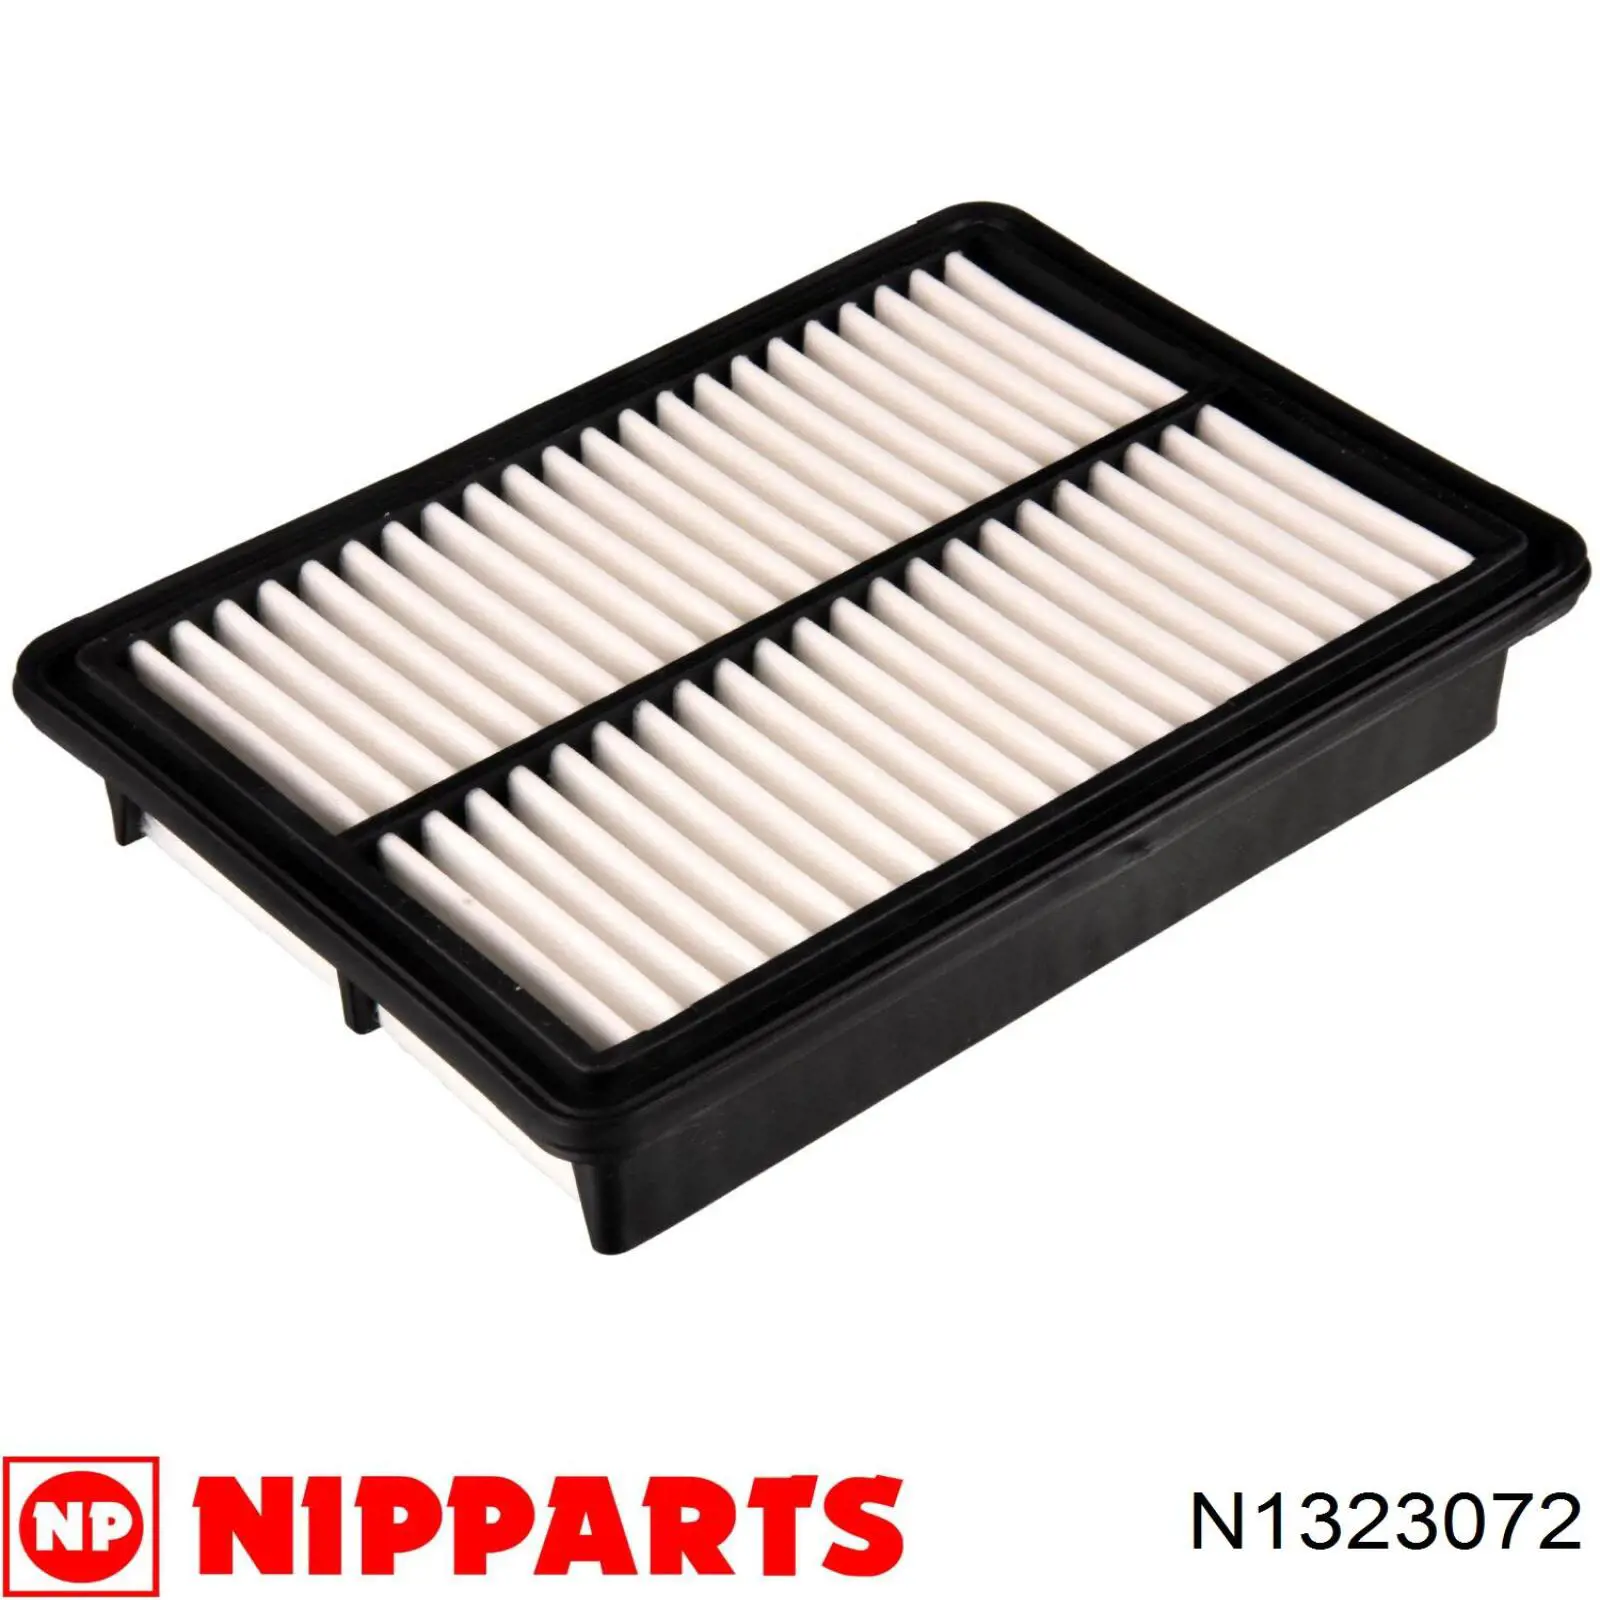 N1323072 Nipparts filtro de aire